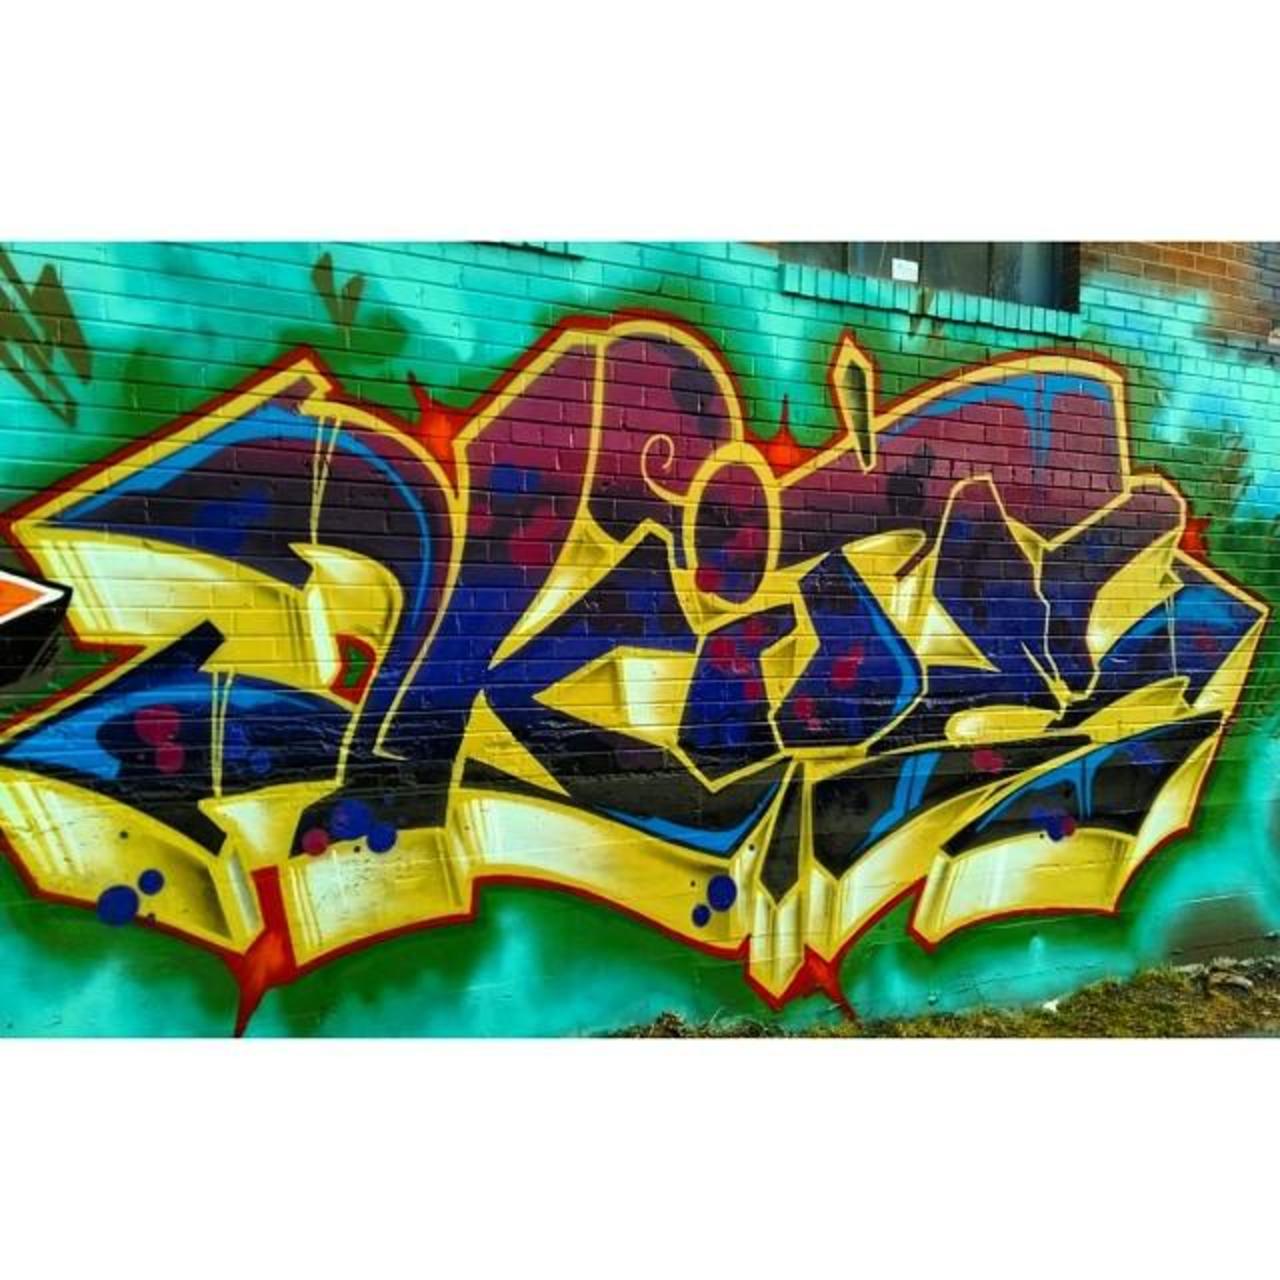 #graffpics #graffiti #graffhunter #graffitiporn #graffiti #denver #denvergraffiti #instagraffiti  #art #streetart #… http://t.co/BNbc84SSuR